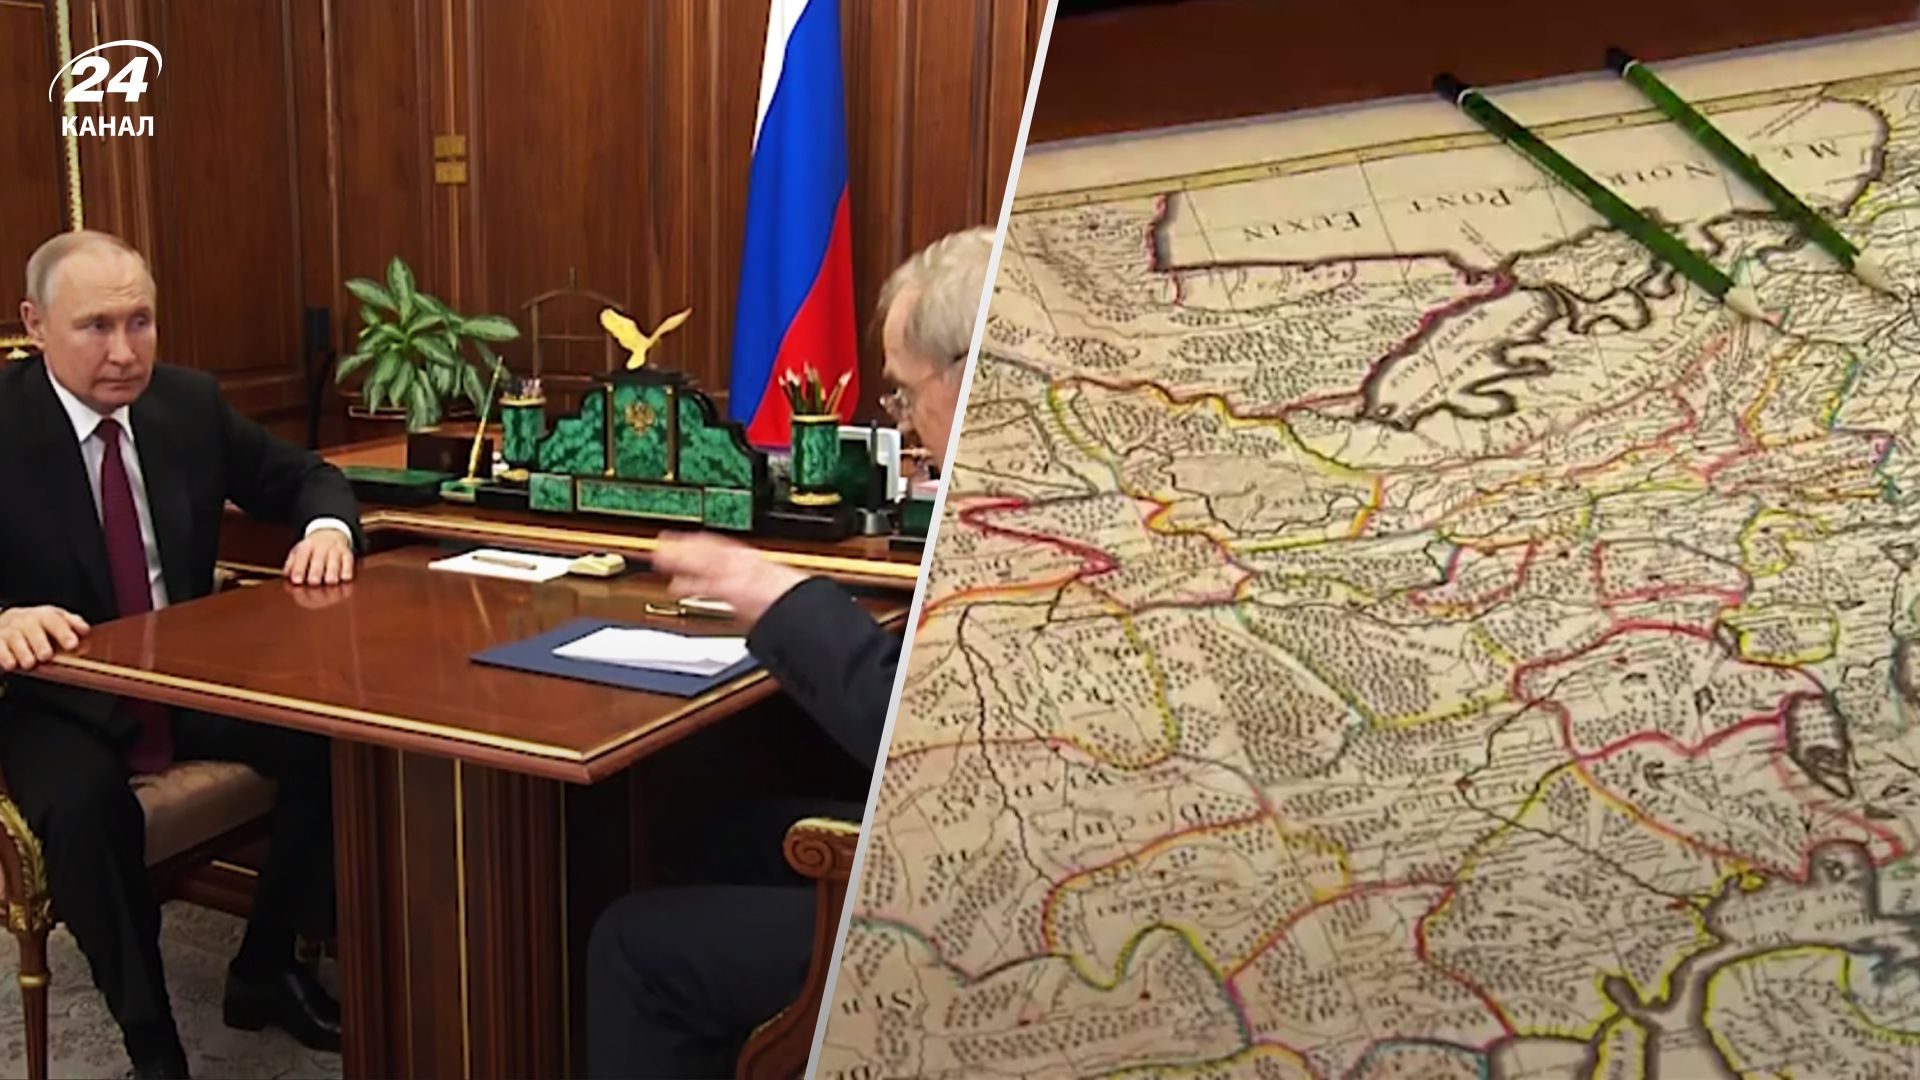 Снова забыл выпить таблетки: Путин заявил, что до СССР никакой Украины не существовало - 24 Канал